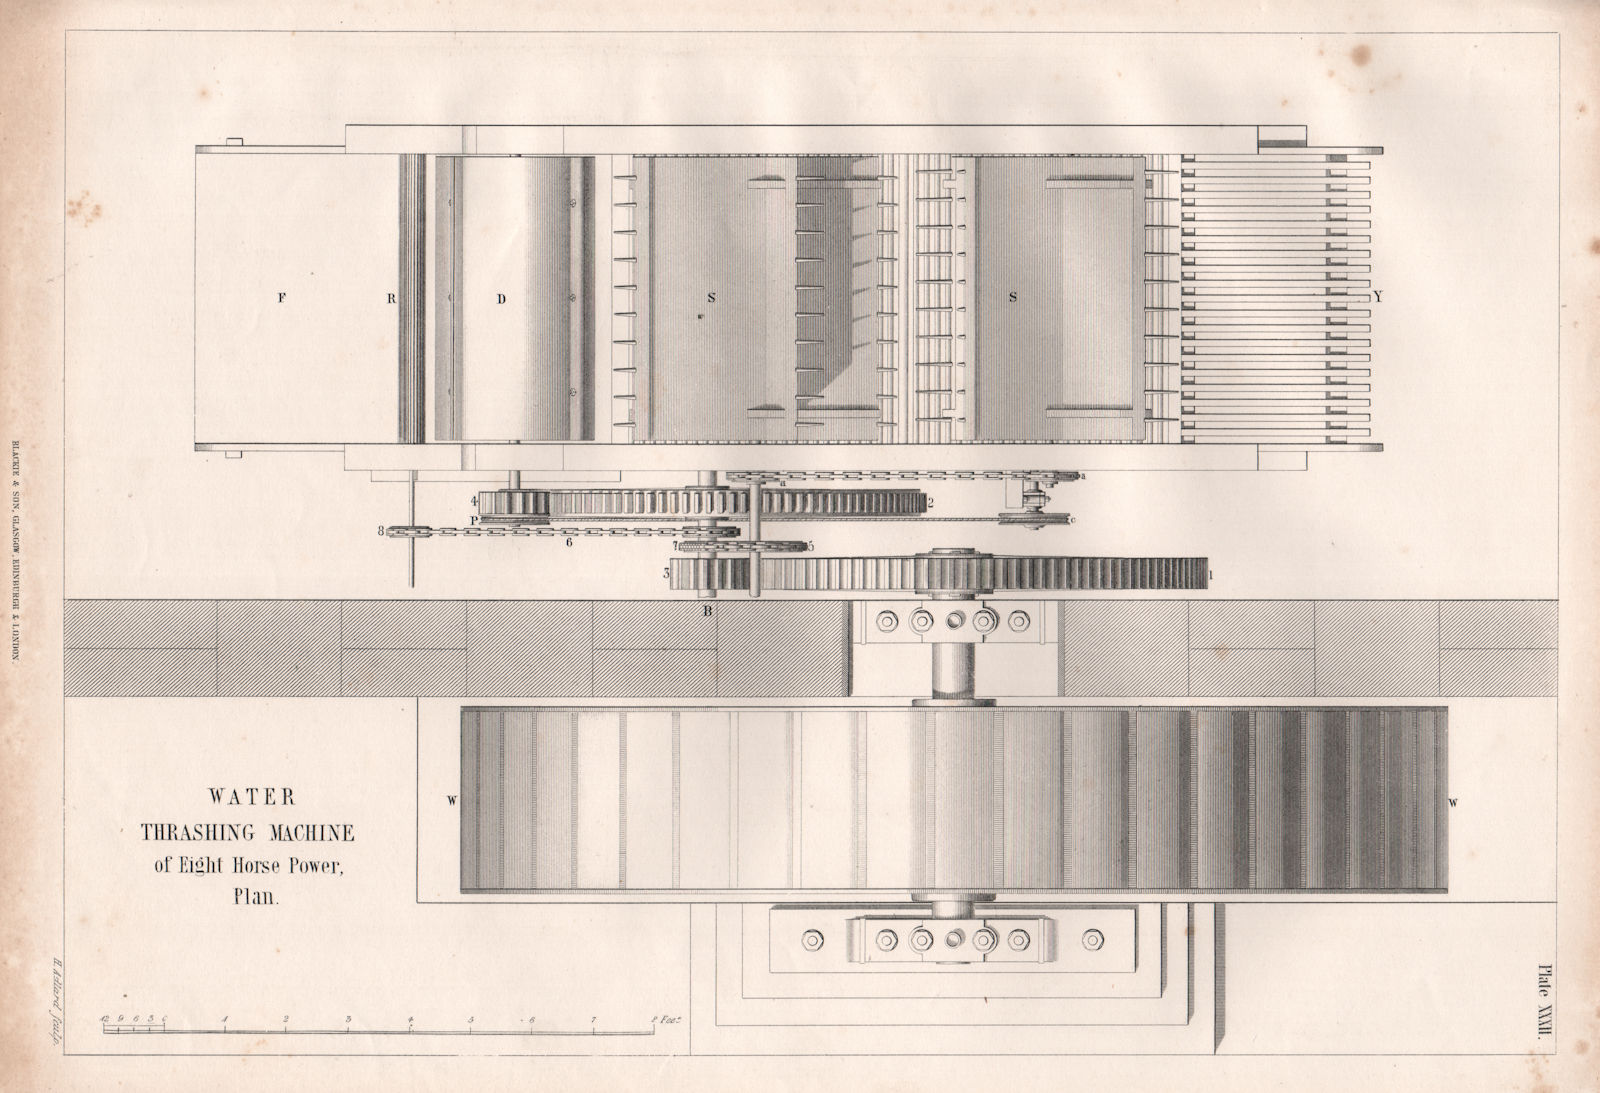 VICTORIAN ENGINEERING DRAWING. 8hp Water thrashing machine, plan 1847 print